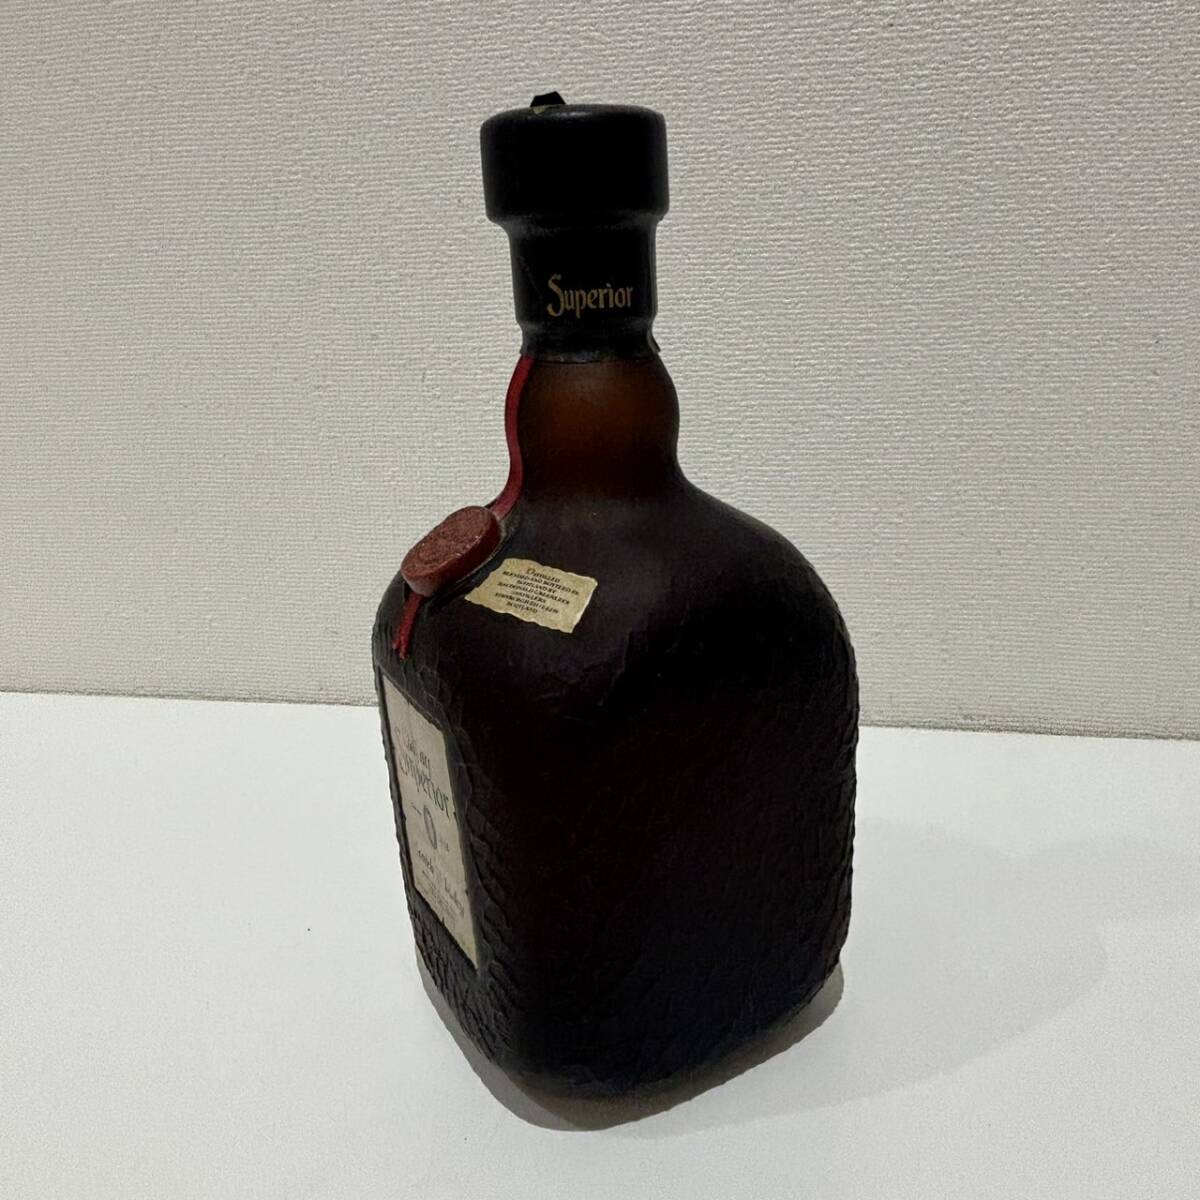 【AMT-10658】オールドパー スペリオール Old Parr Superior 750ml 43% スコッチウイスキー 未開栓 古酒 お酒 洋酒 アルコール ウイスキーの画像10